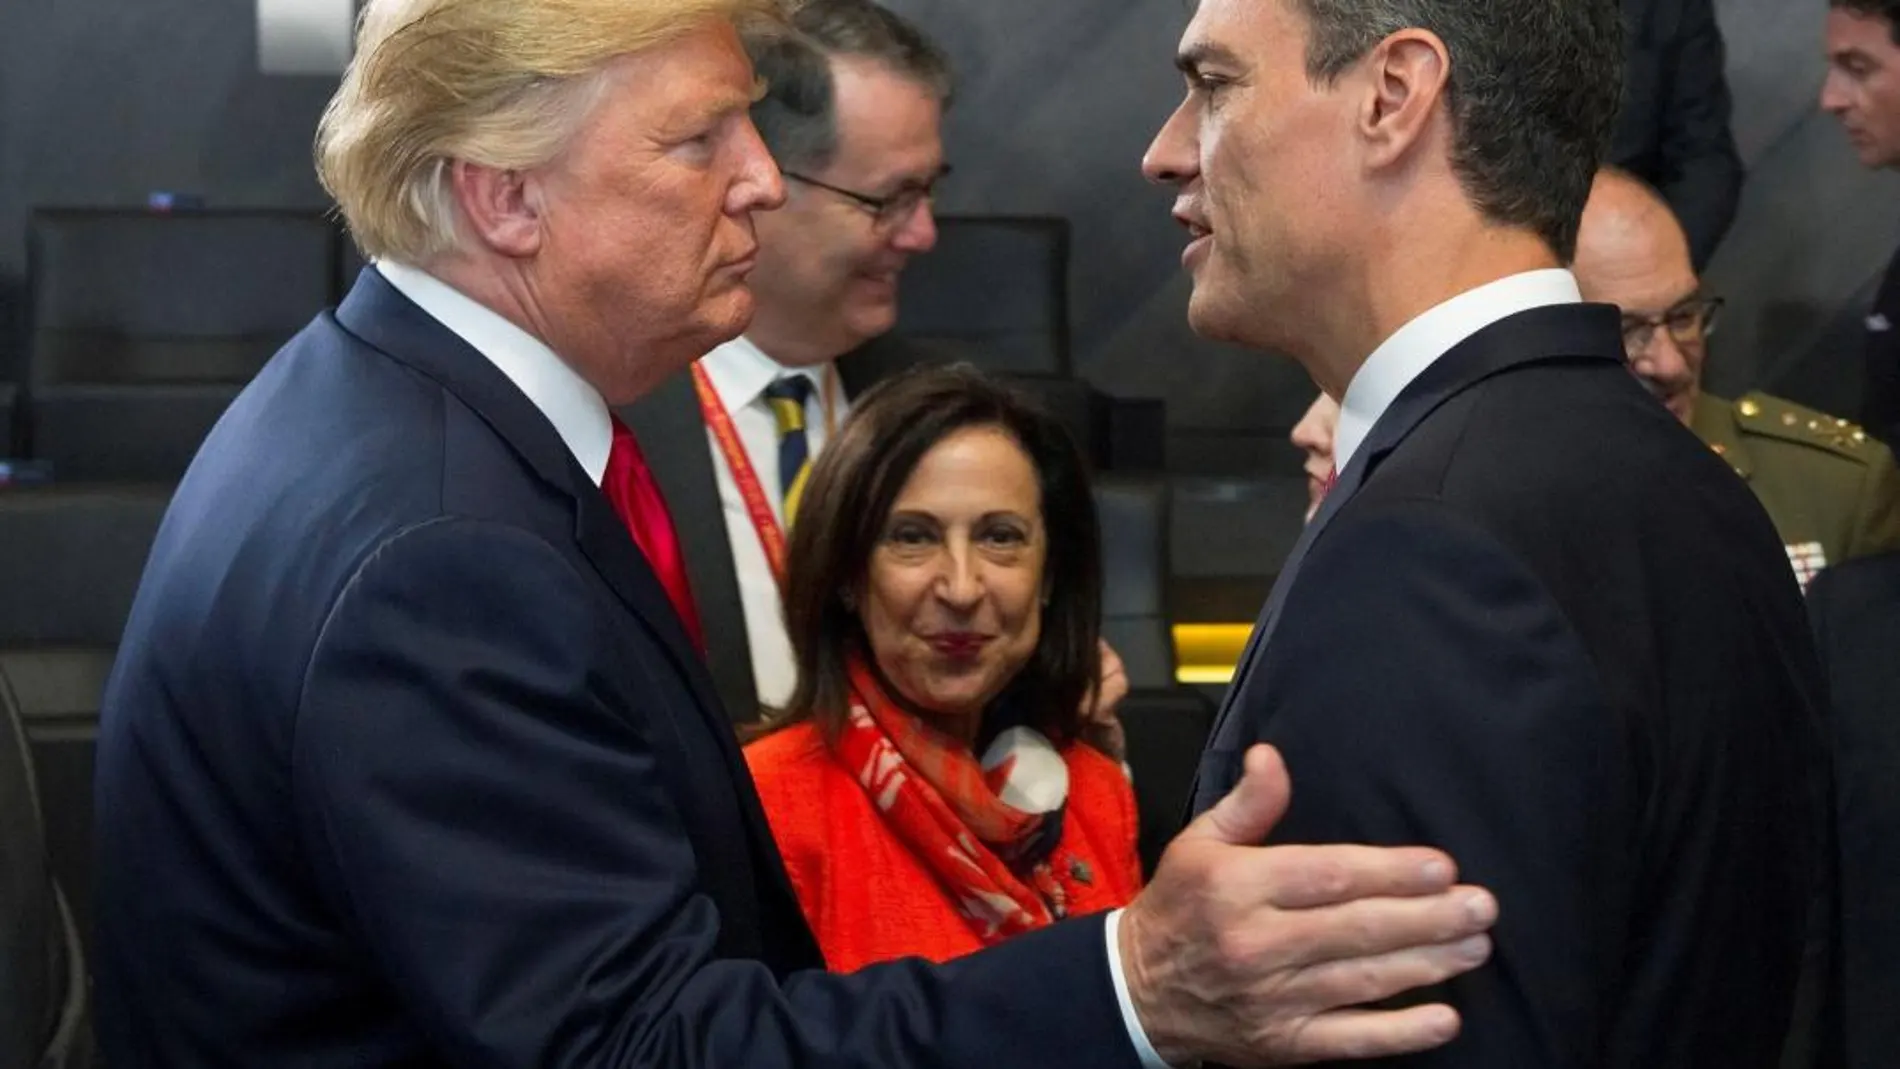 Pedro Sánchez y Donald Trump se saludaron hoy por vez primera al coincidir al inicio de la primera sesión de la cumbre de la OTAN.